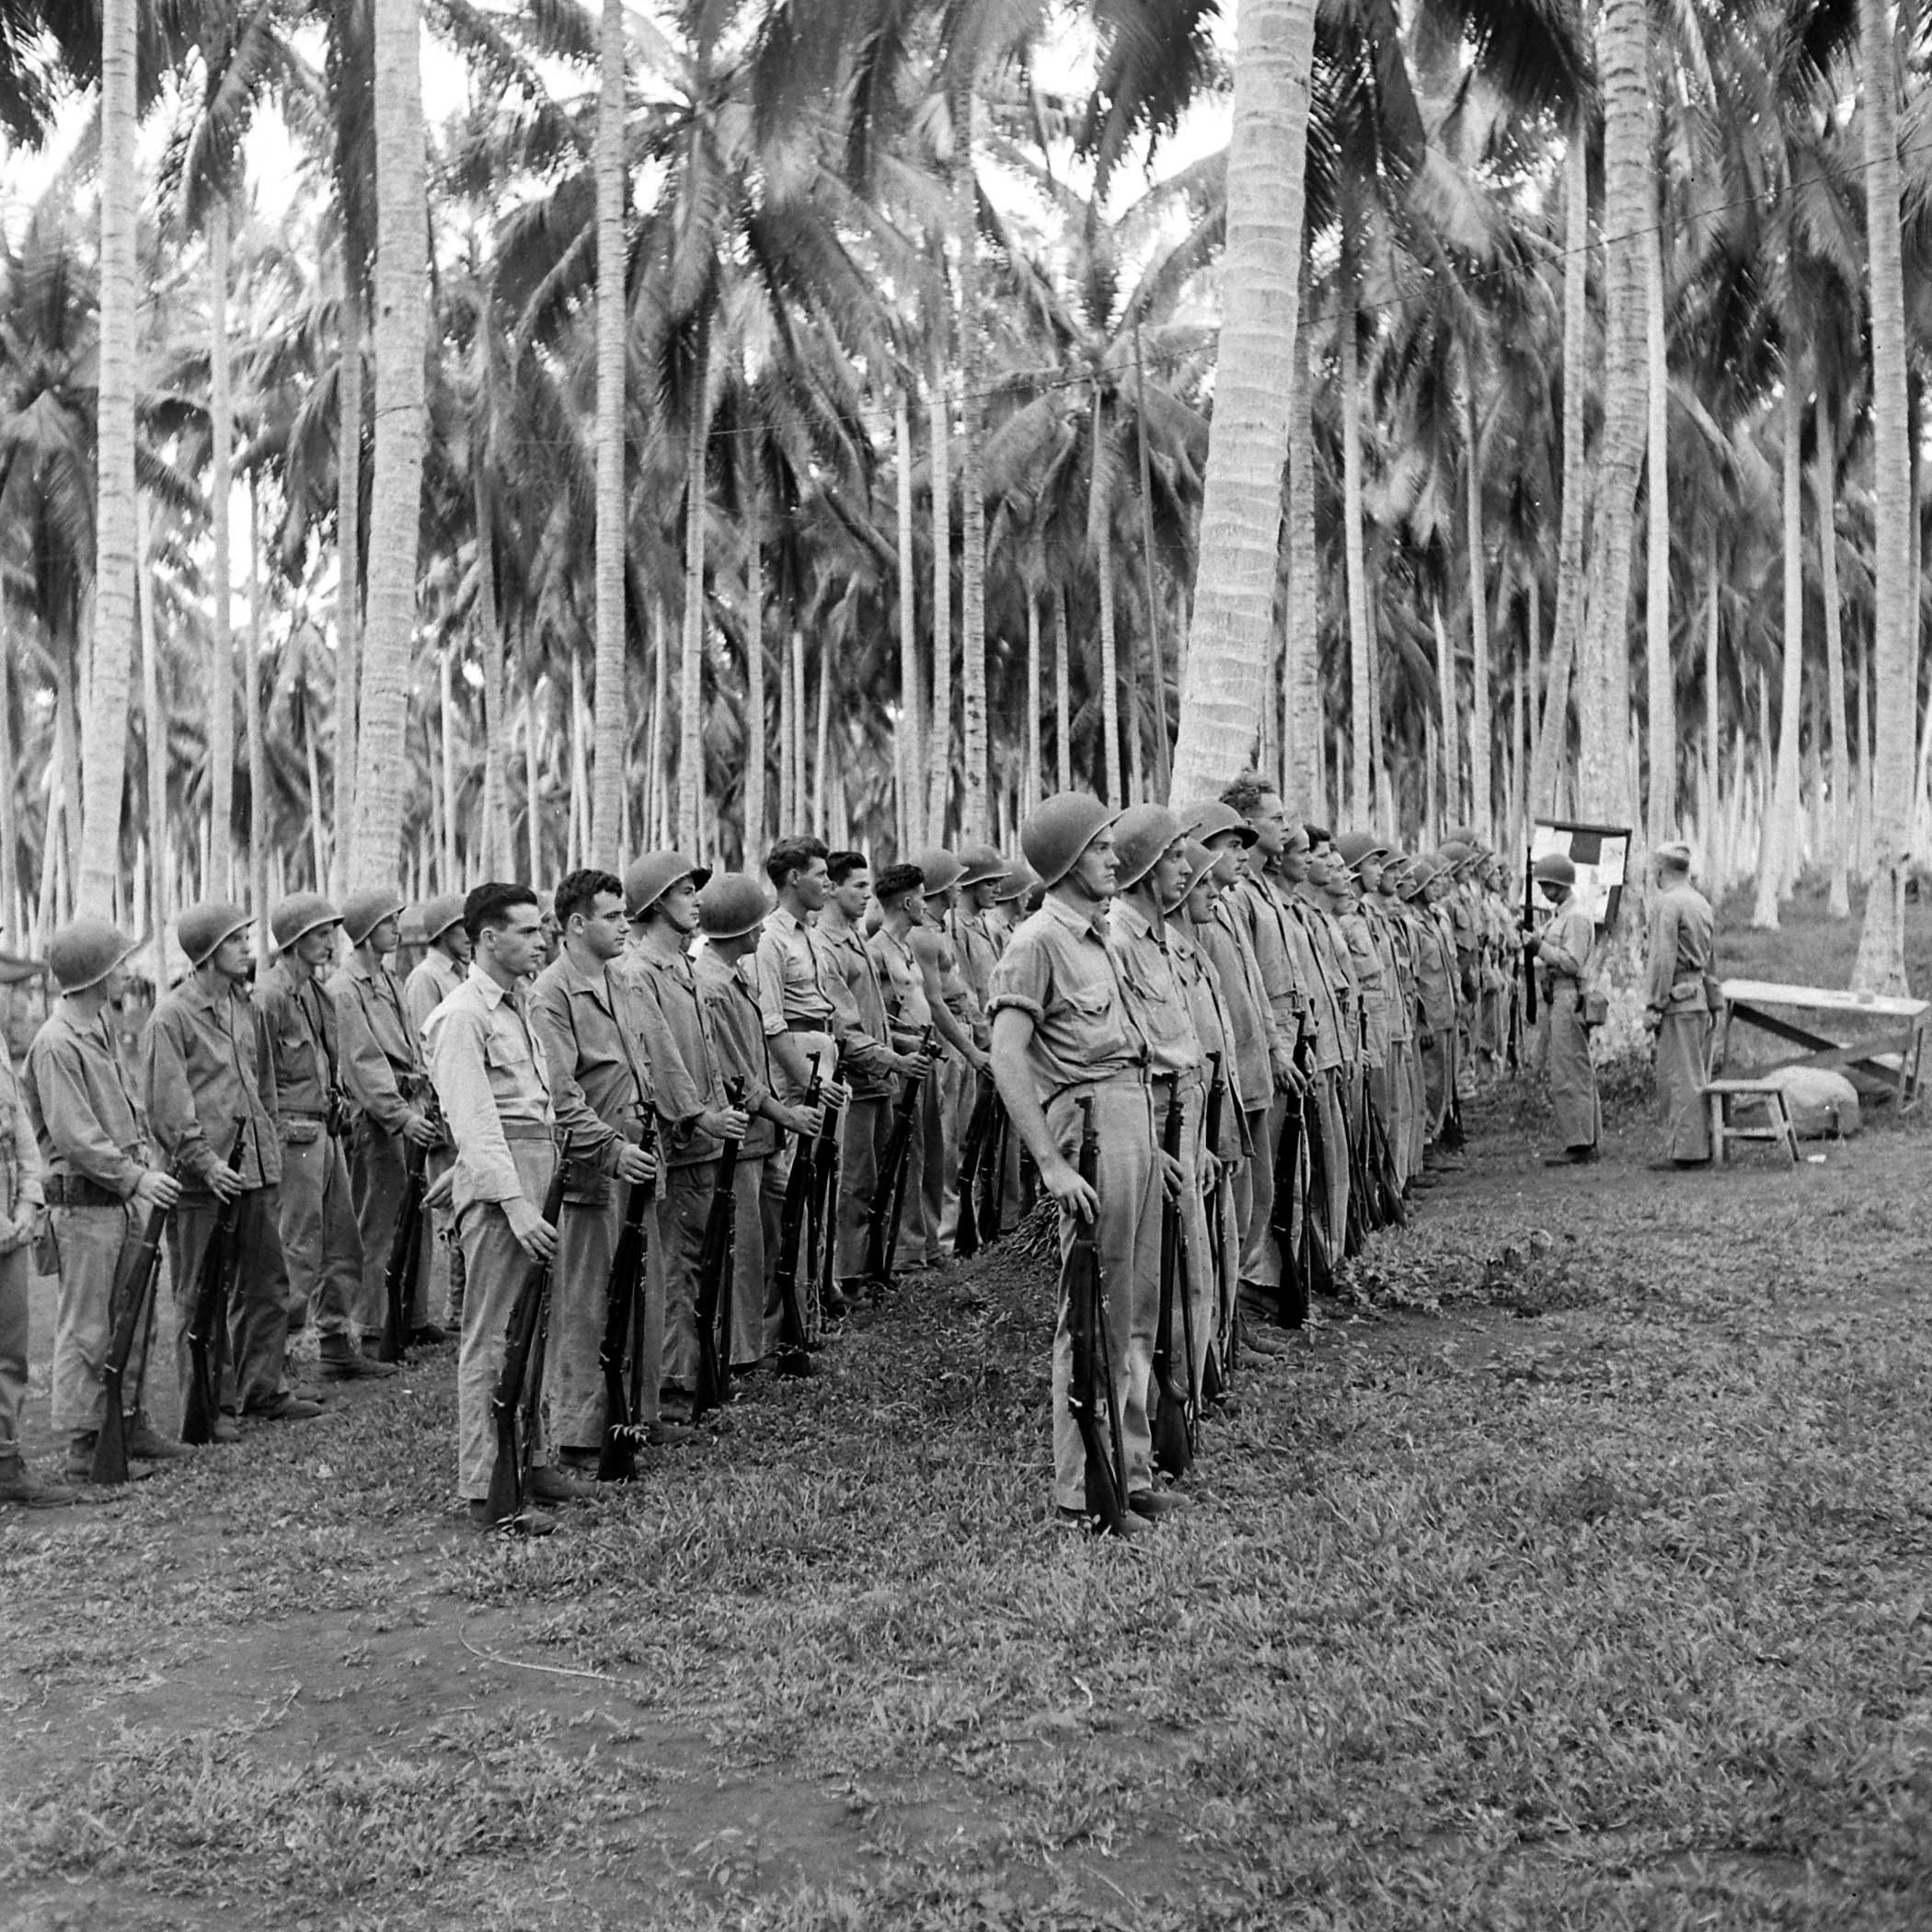 Guadalcanal, December 1942.